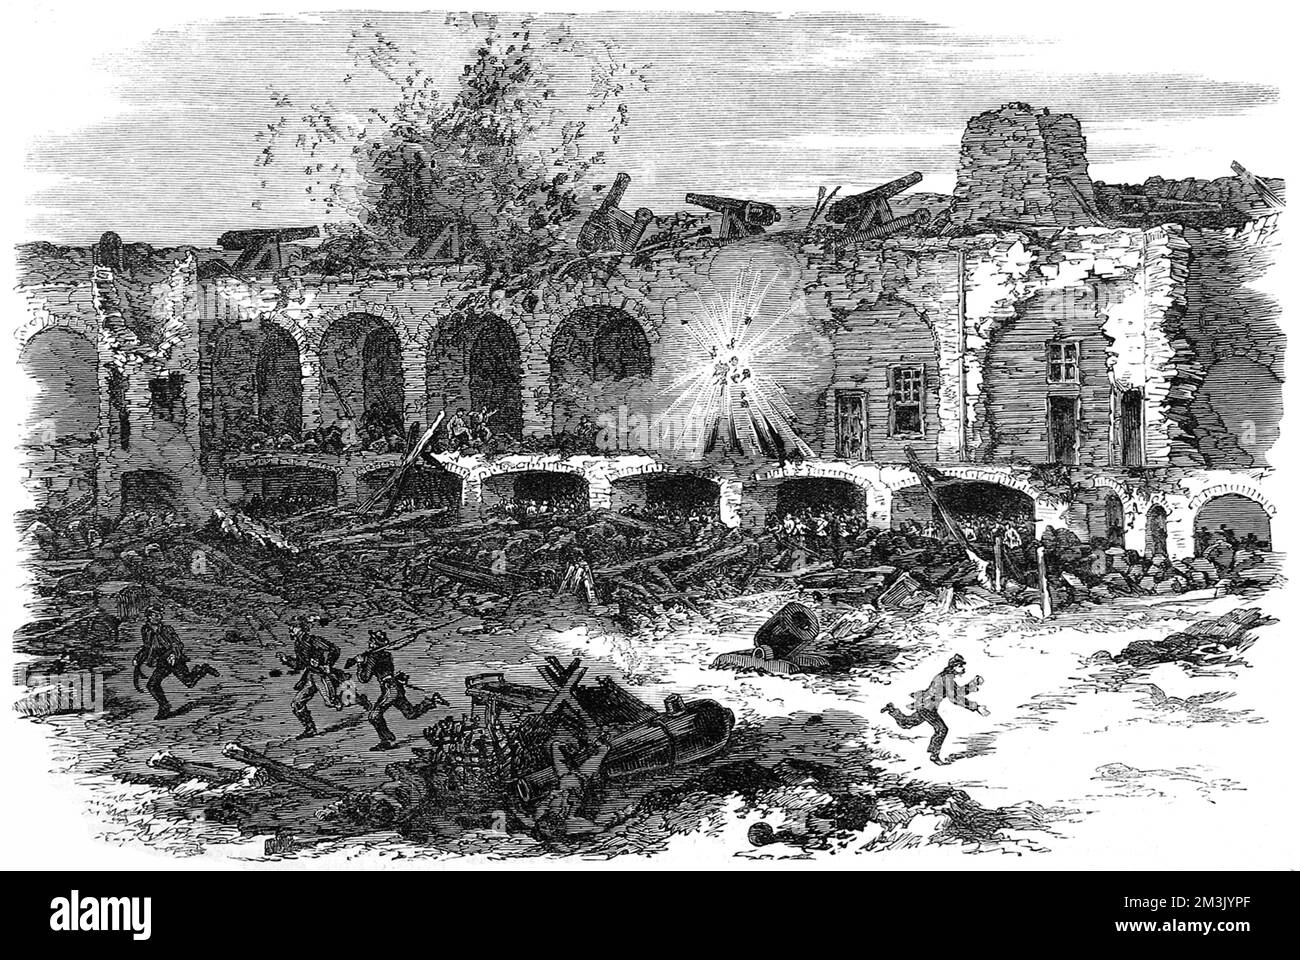 L'interno di Fort Sumter, porto di Charleston, dopo un bombardamento continuo da parte delle batterie federali sull'isola di Morr. Fort Sumter ha fornito il primo impegno della guerra civile e la sua proprietà è stata contesa caldo dai federali e dai confederati dappertutto. Data: 1863 Foto Stock